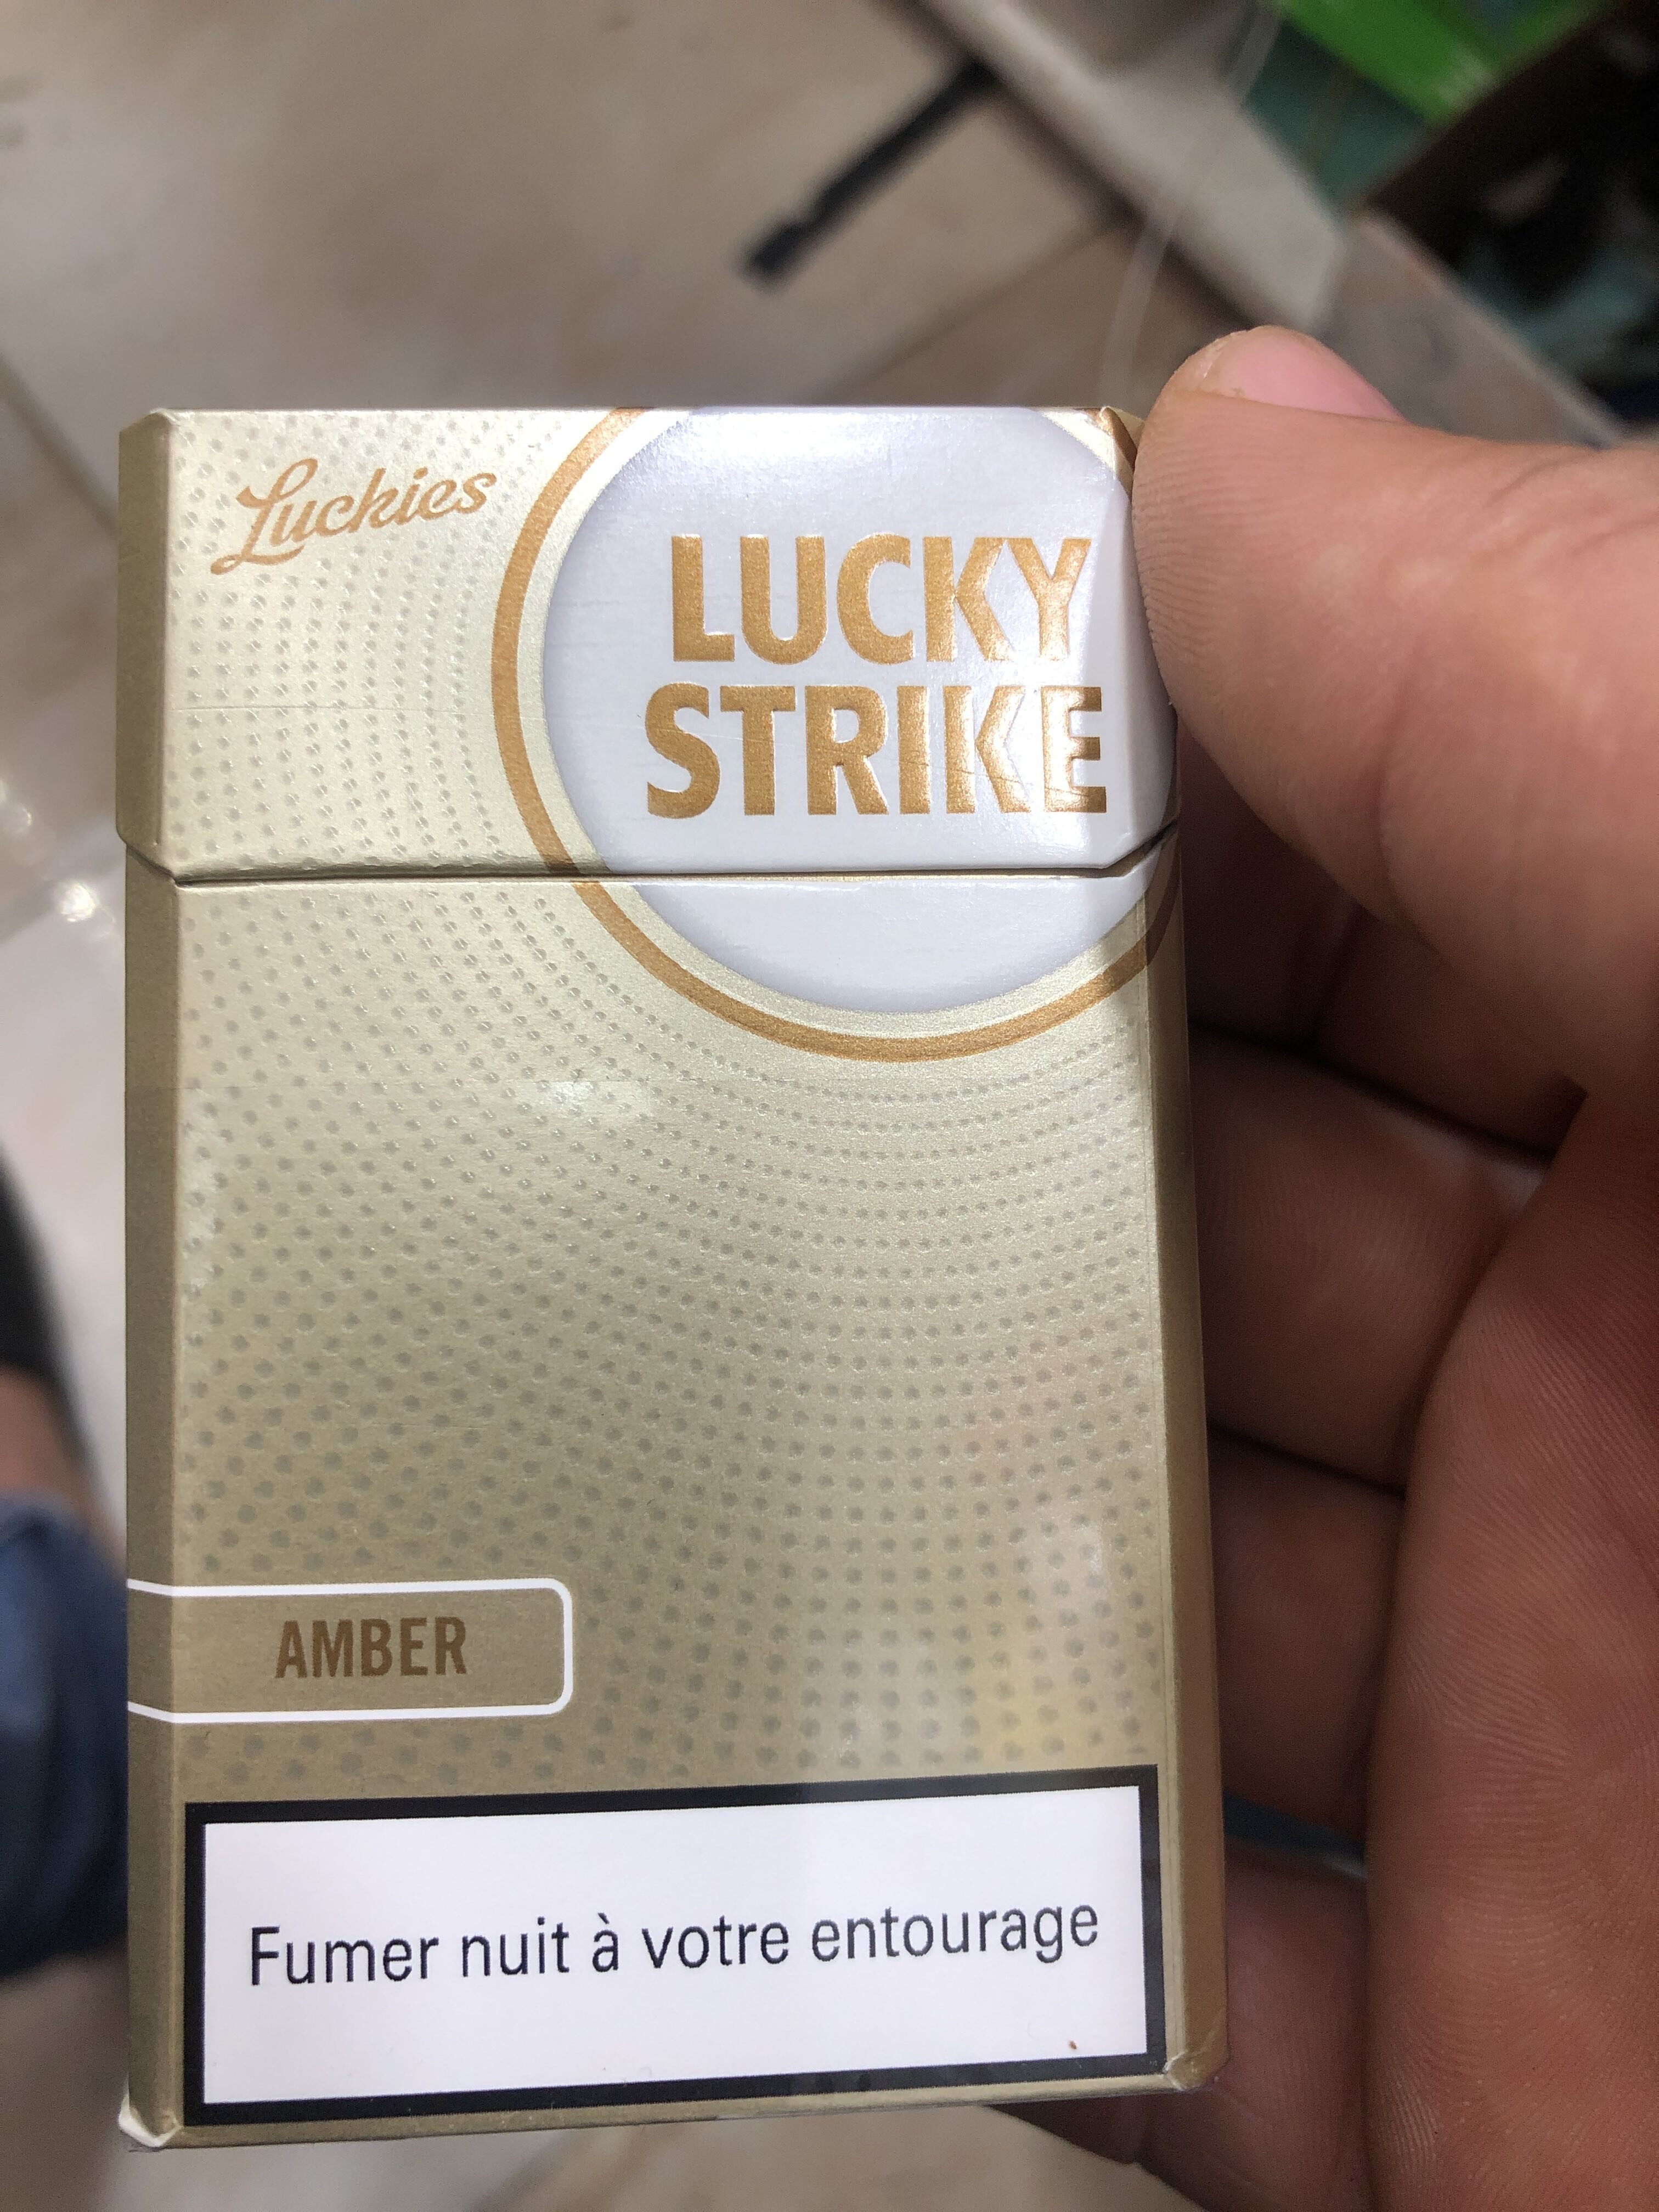 lucky strike - Product - en